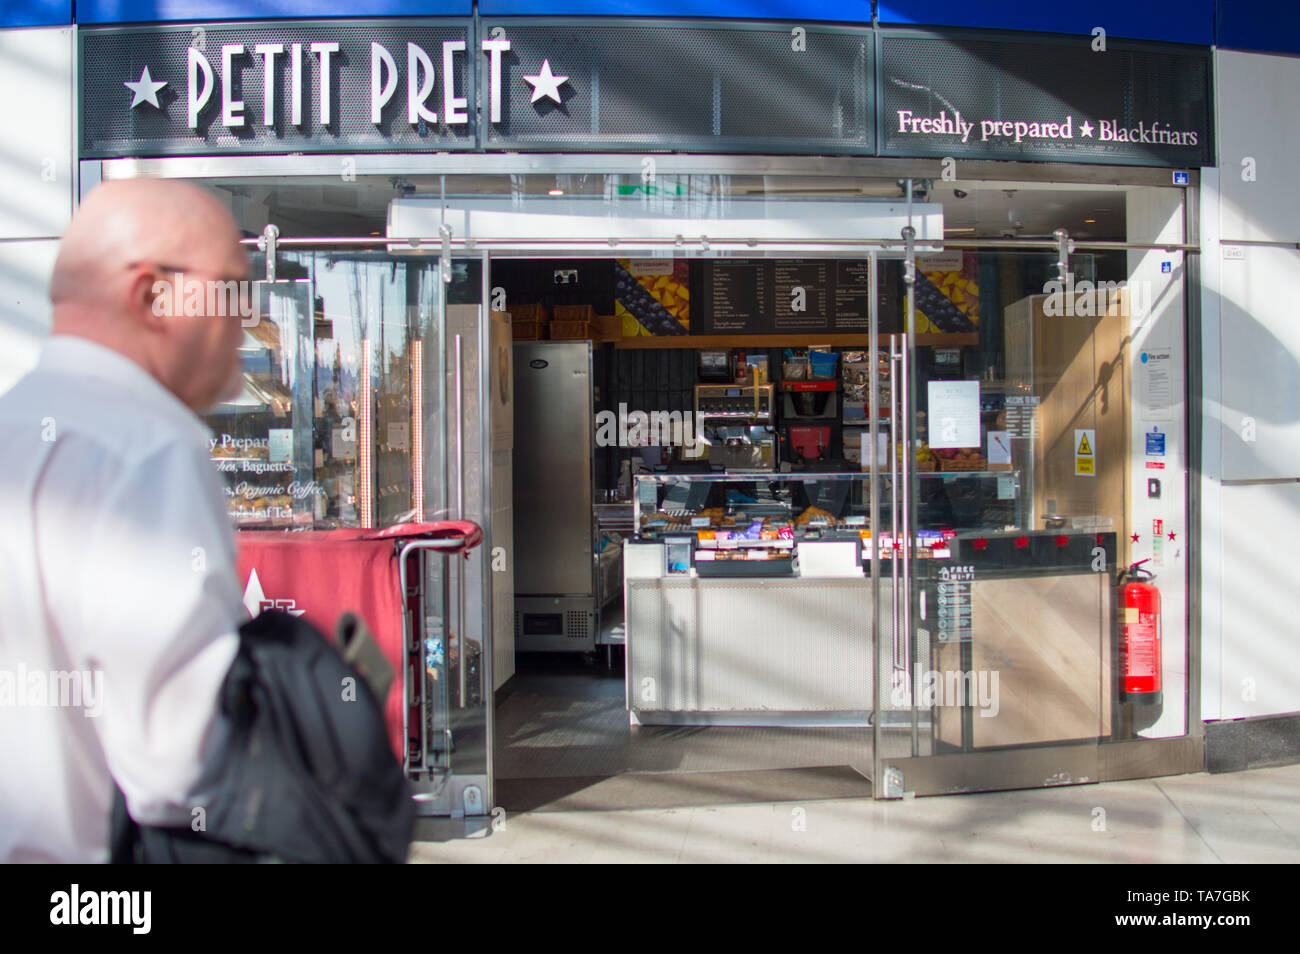 PETIT PRET die kleinere Größe Pret a Manger Niederlassung in London Blackfriars Station Stockfoto